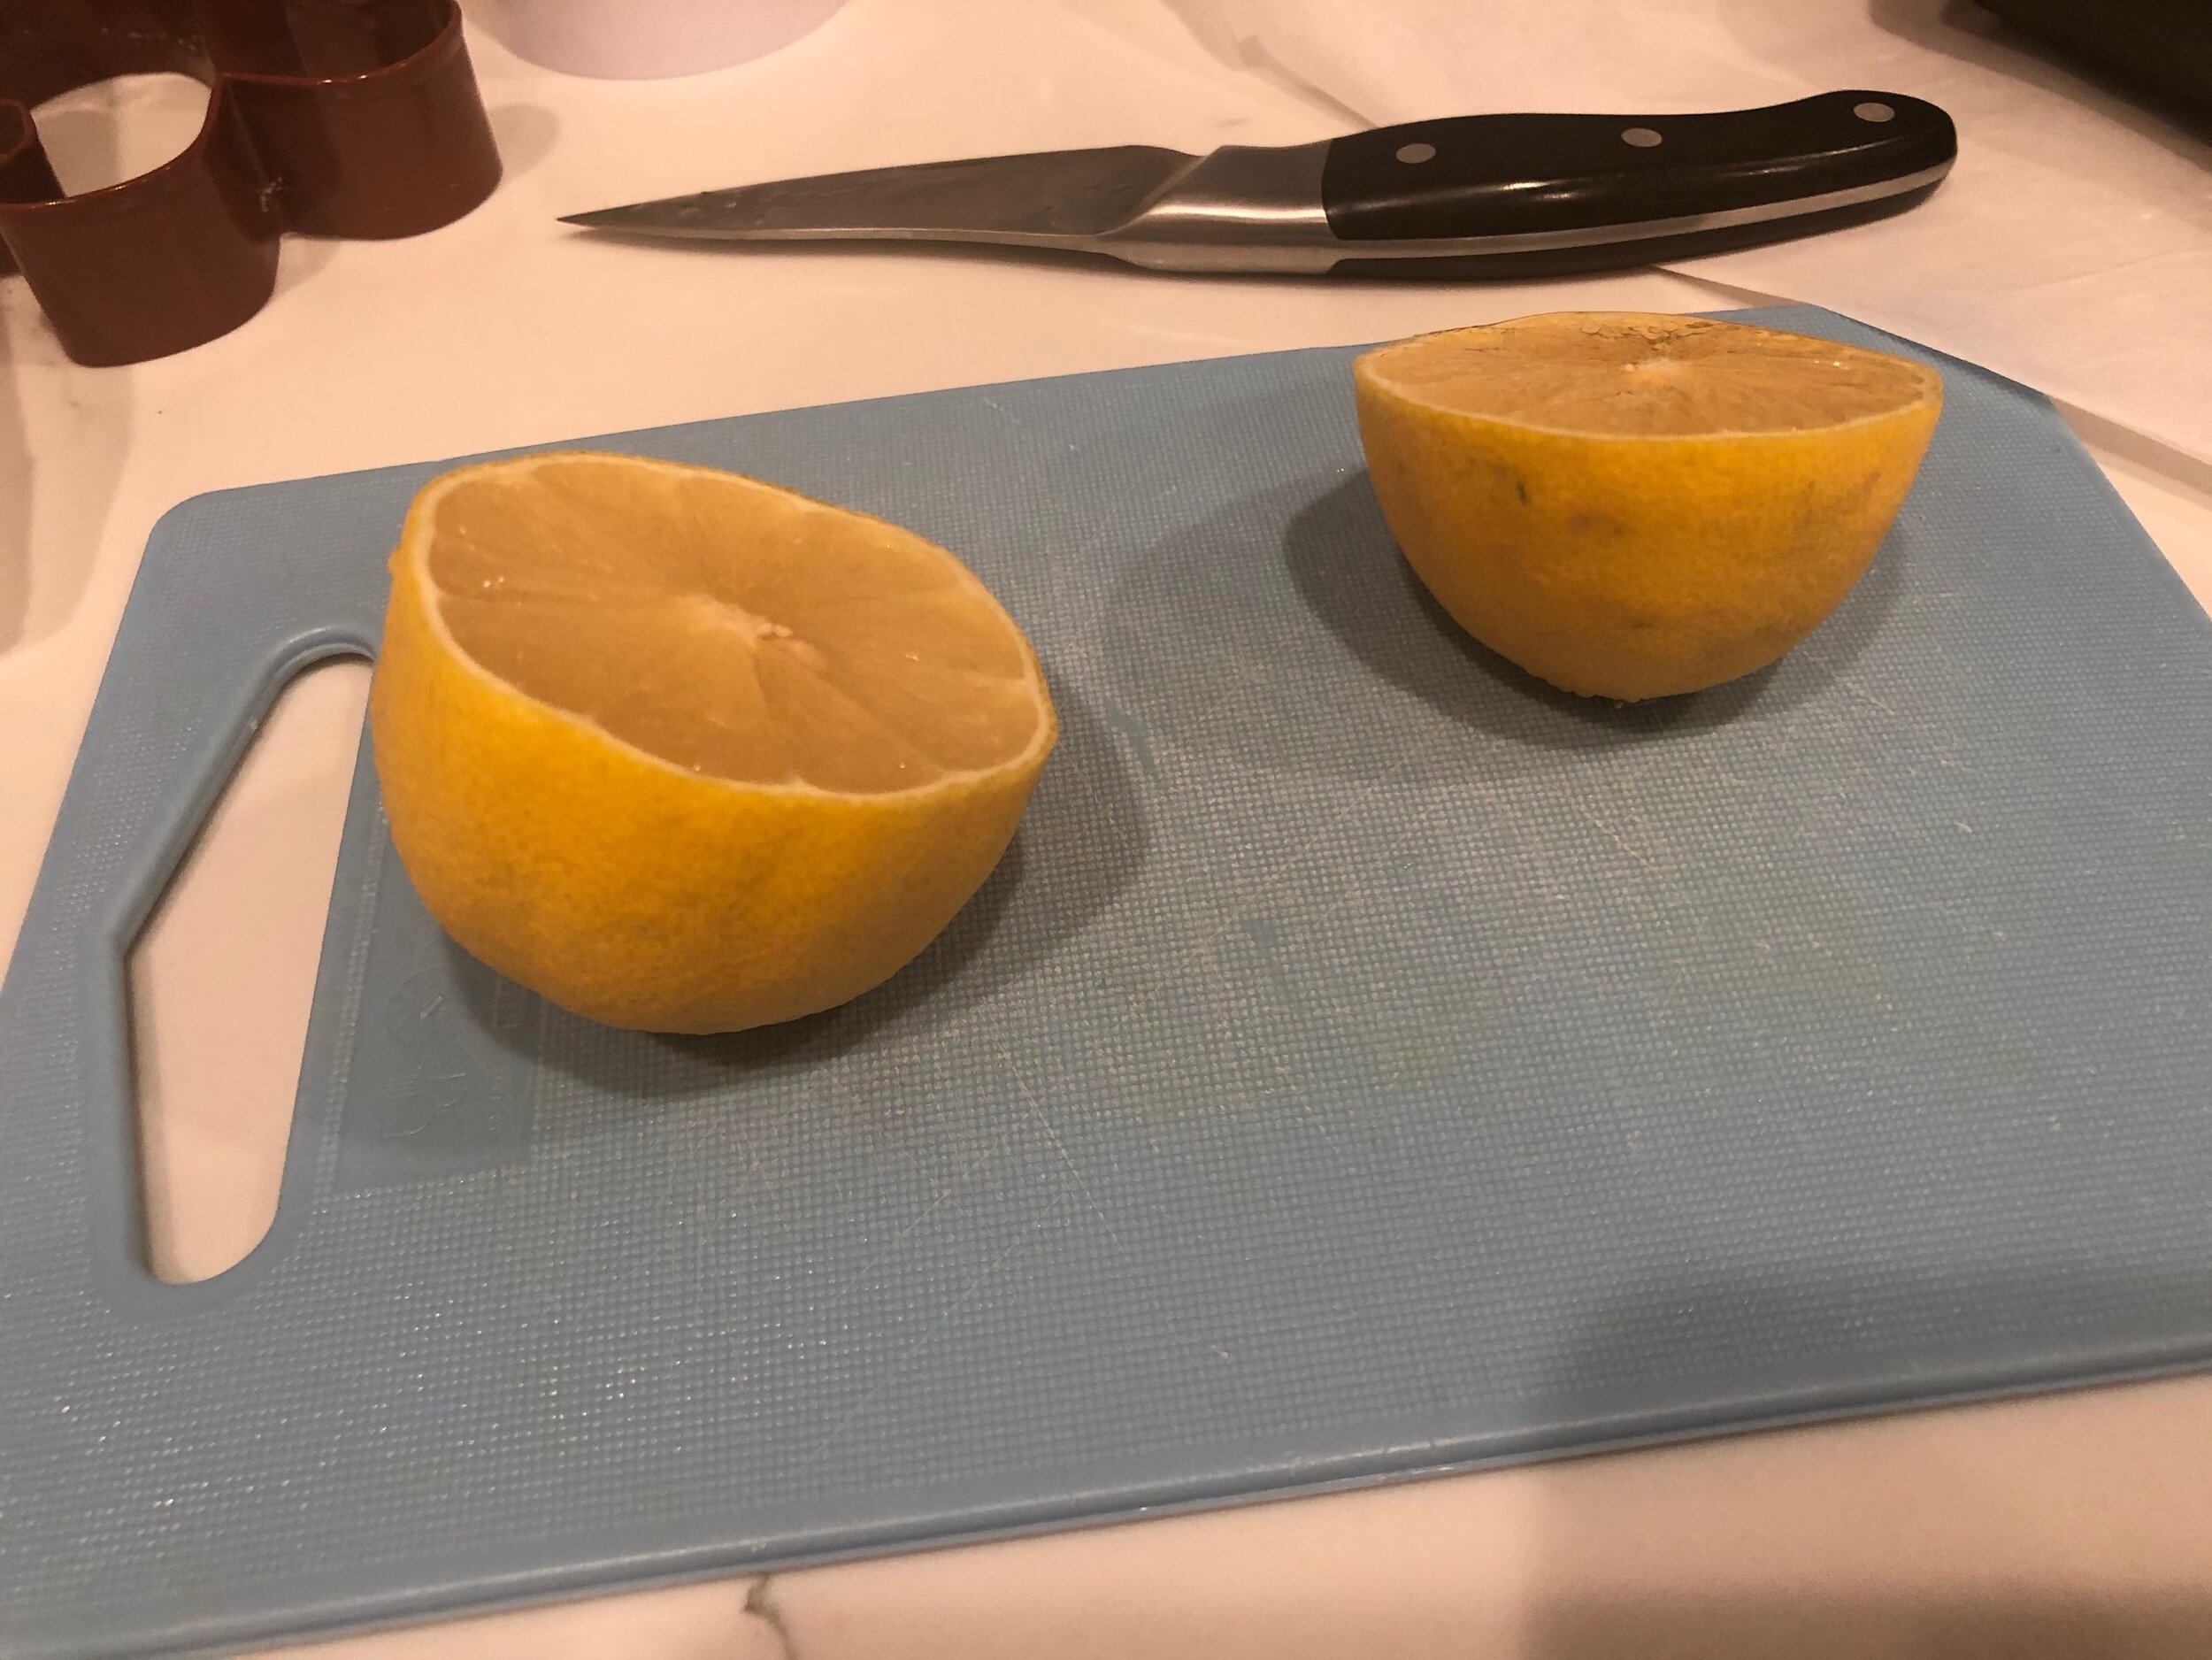  I use fresh lemon juice.  